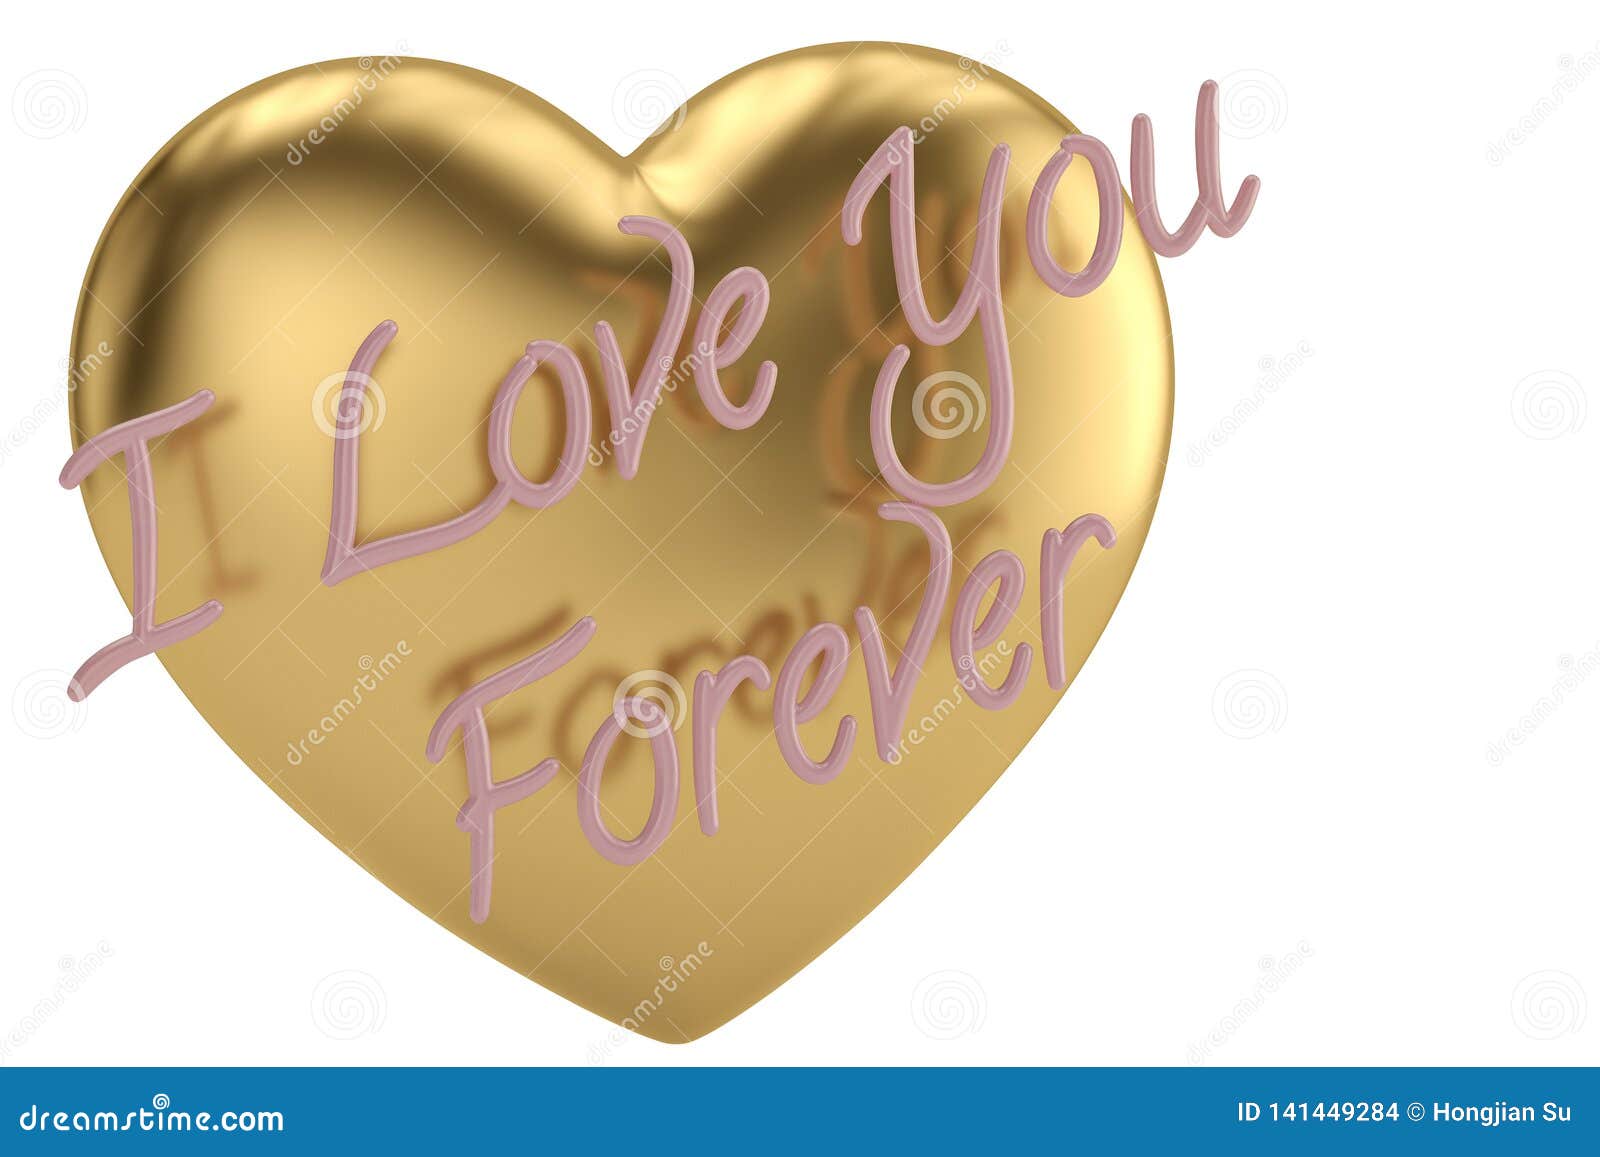 Forever Love You Quote Cartoon Vector | CartoonDealer.com #86498921